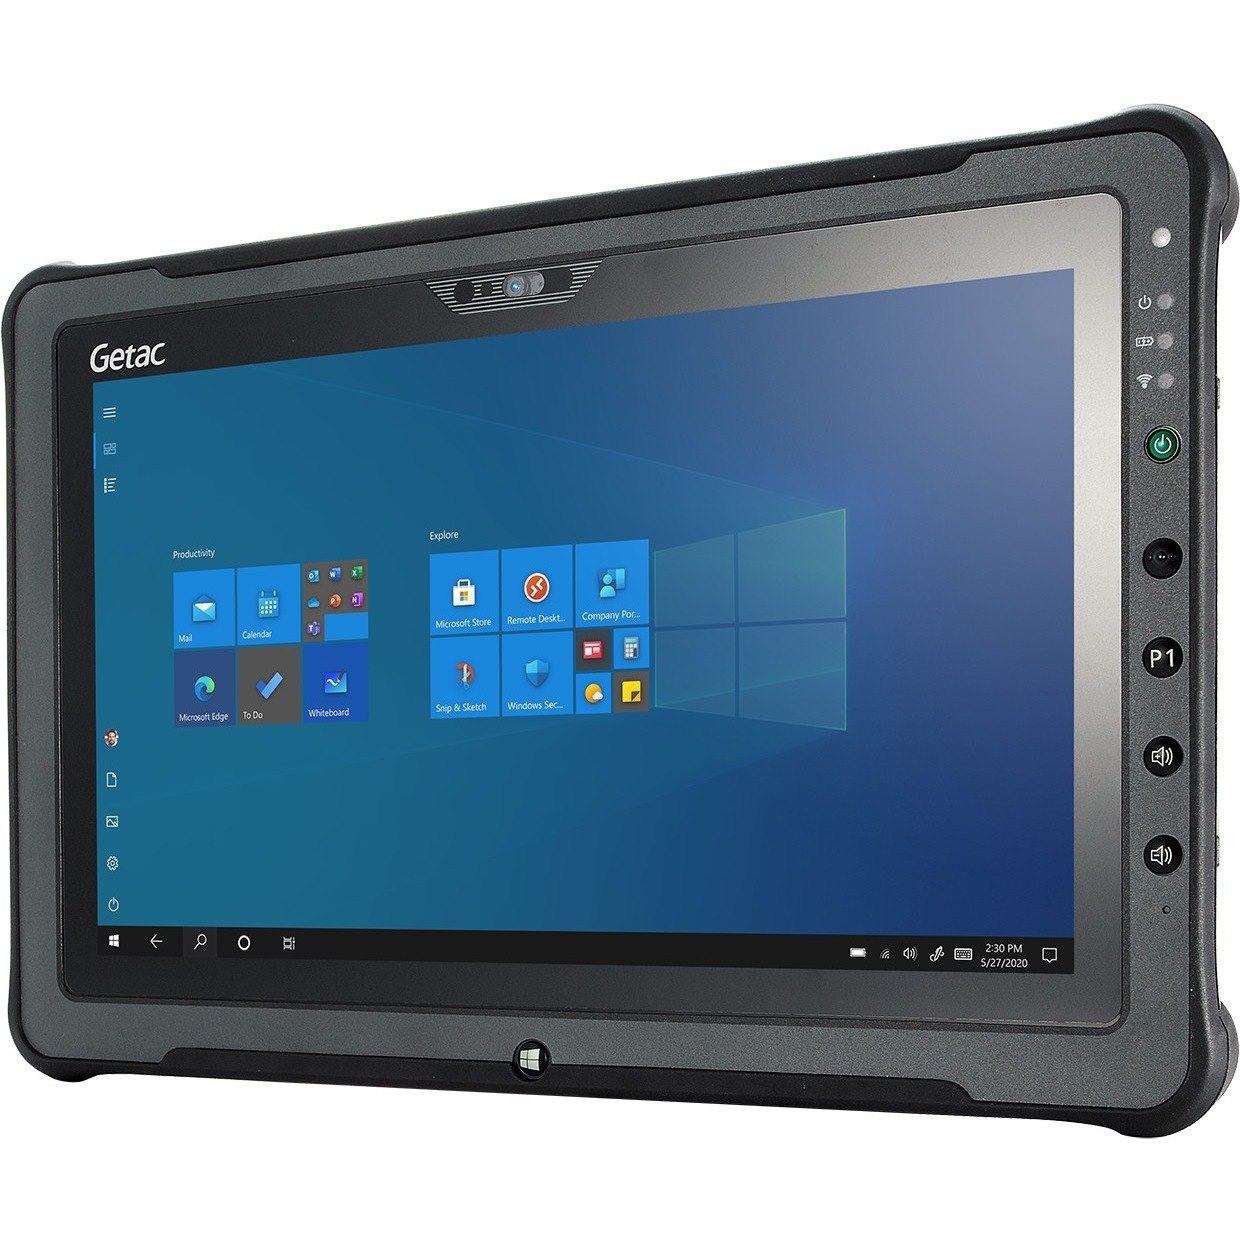 Getac F110 Tablet - Core i5 - TAA Compliant